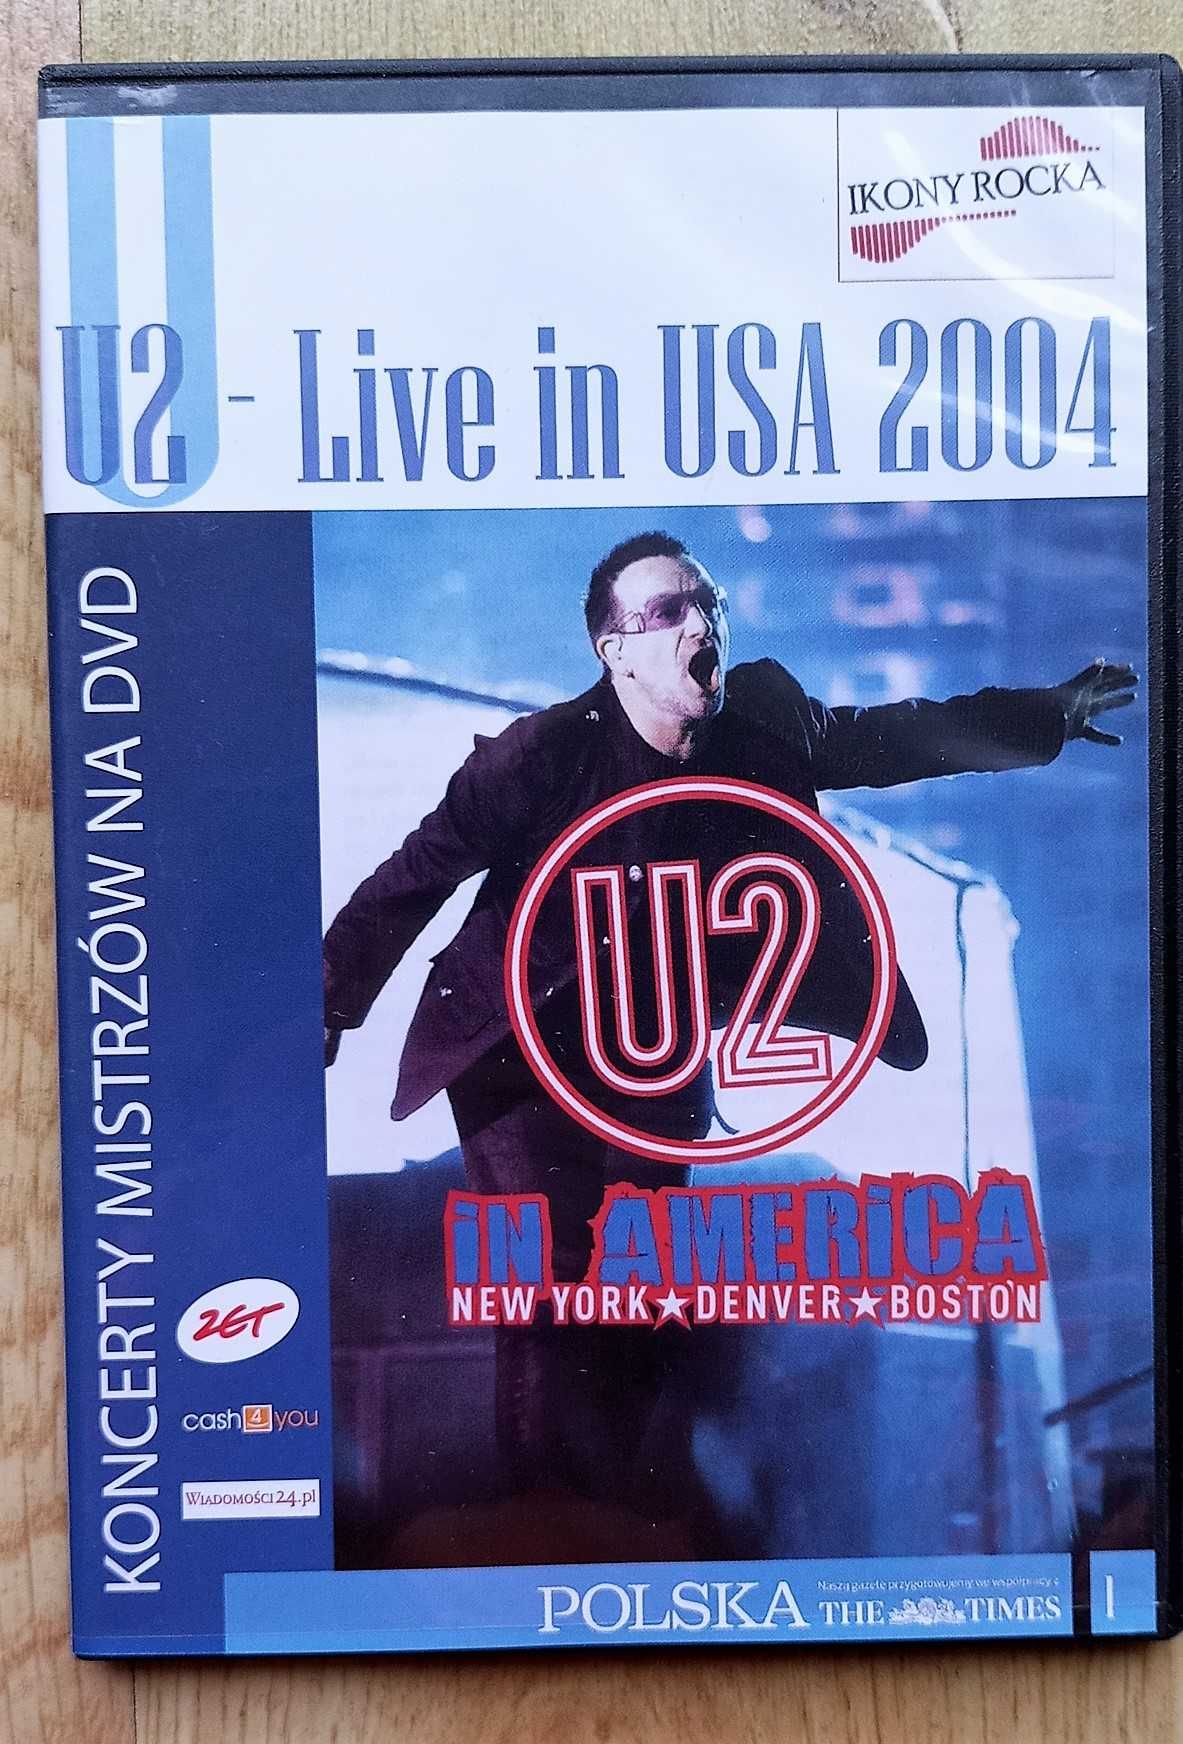 U2 Live in USA DVD